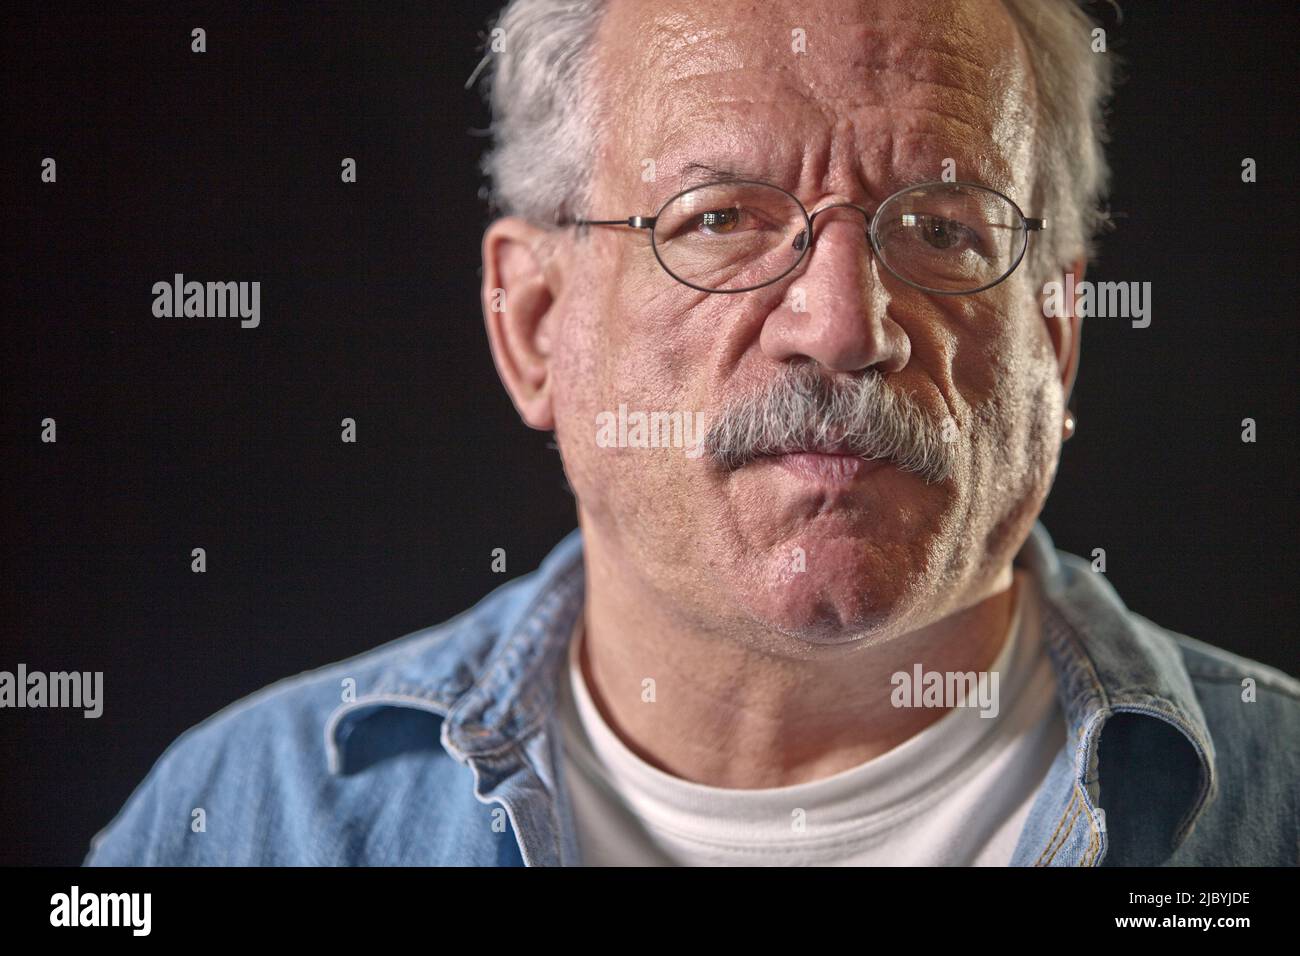 Serious older man wearing eyeglasses Stock Photo